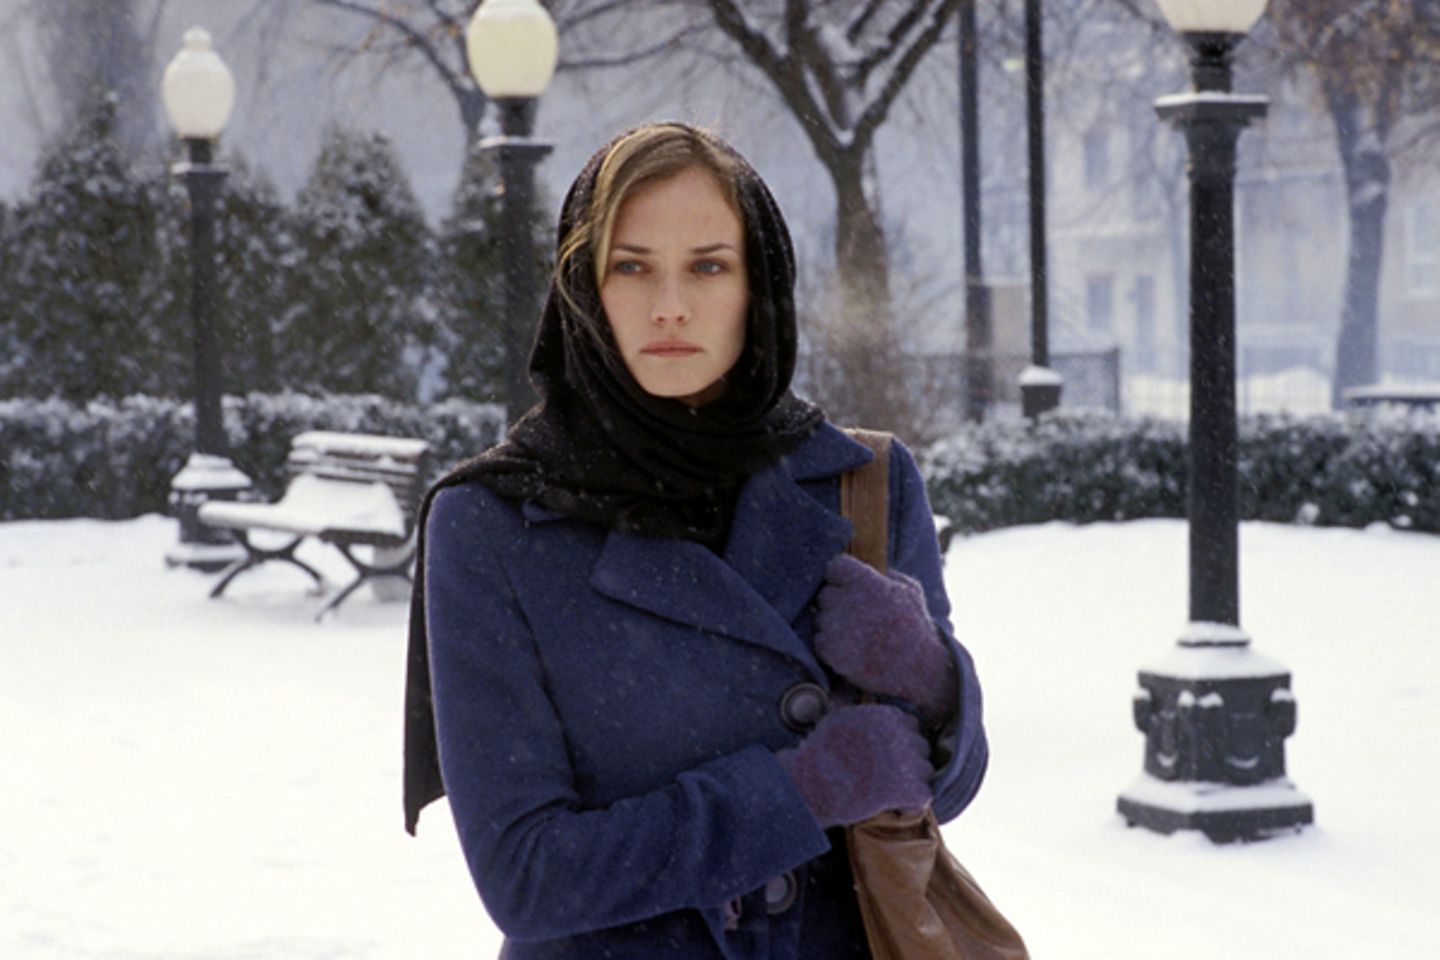 Diane Kruger in "Sehnsüchtig" (2004)